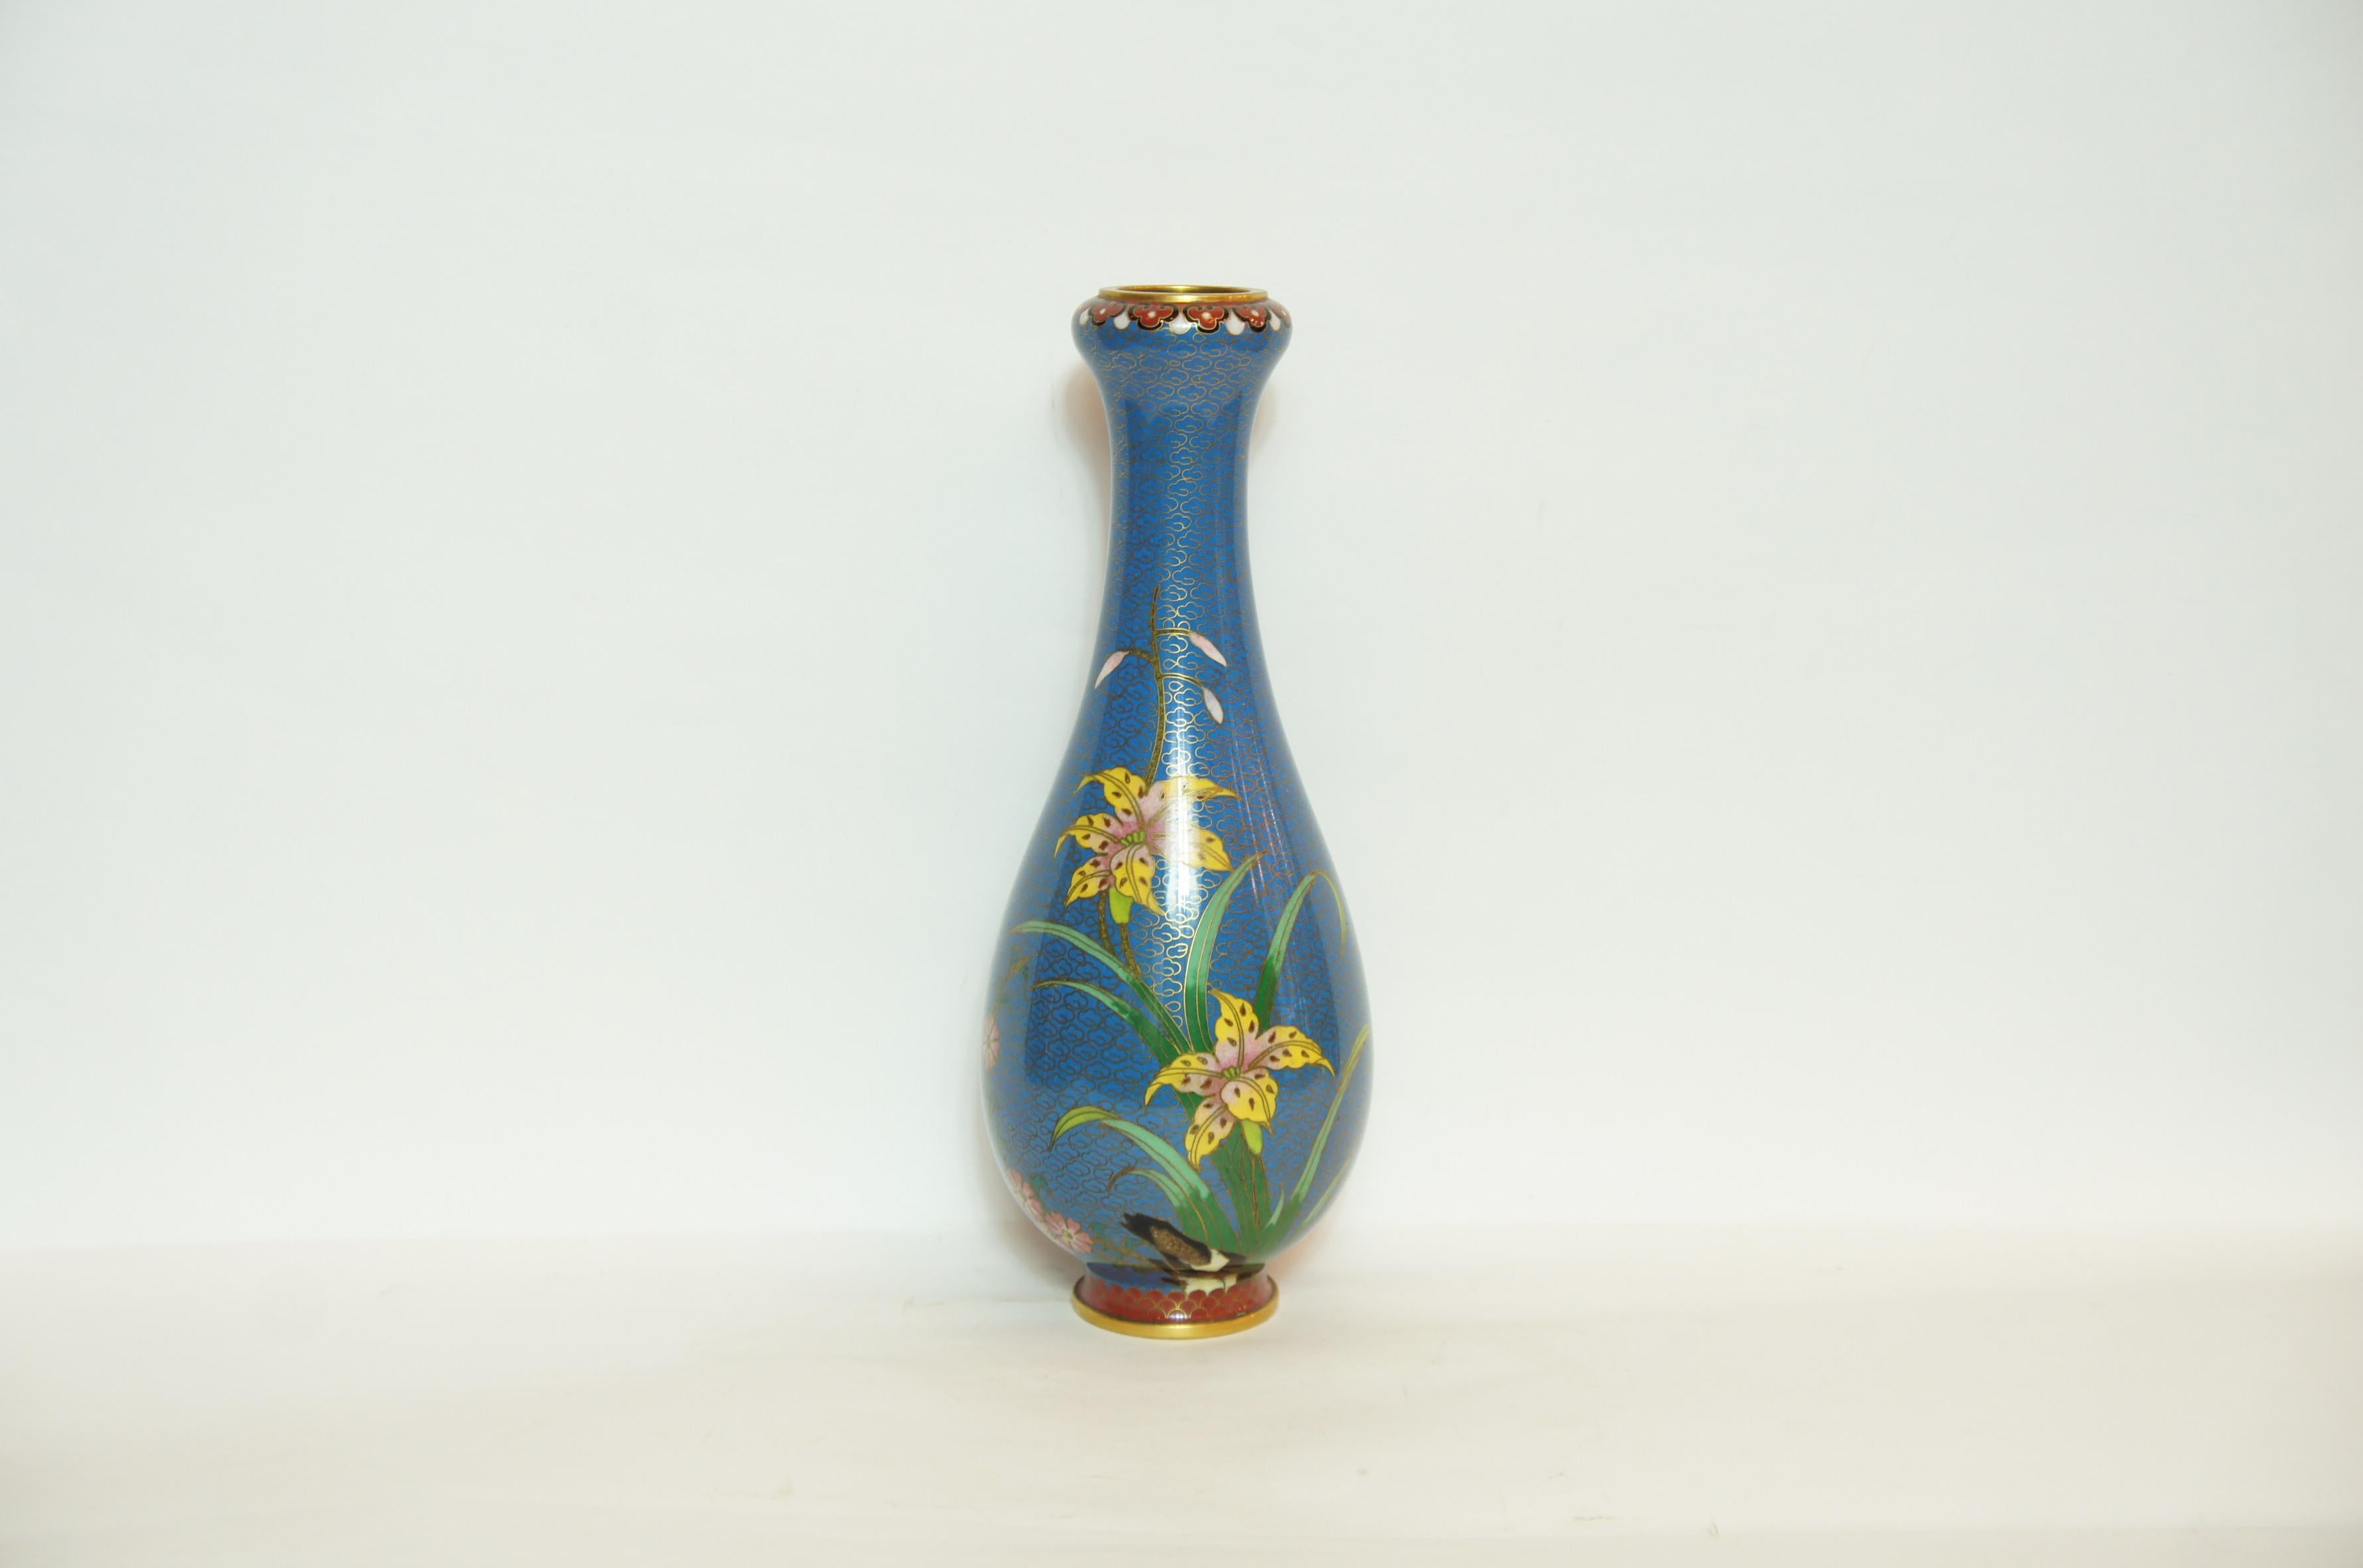 Il s'agit d'un vase à fleurs bleu fabriqué au Japon vers 1950, à l'époque Showa.
Il est conçu avec des fleurs et des papillons. 
Ce style réalisé avec du cuivre est appelé Shippou en japonais.
La technique du cloisonné a été maîtrisée en Chine au